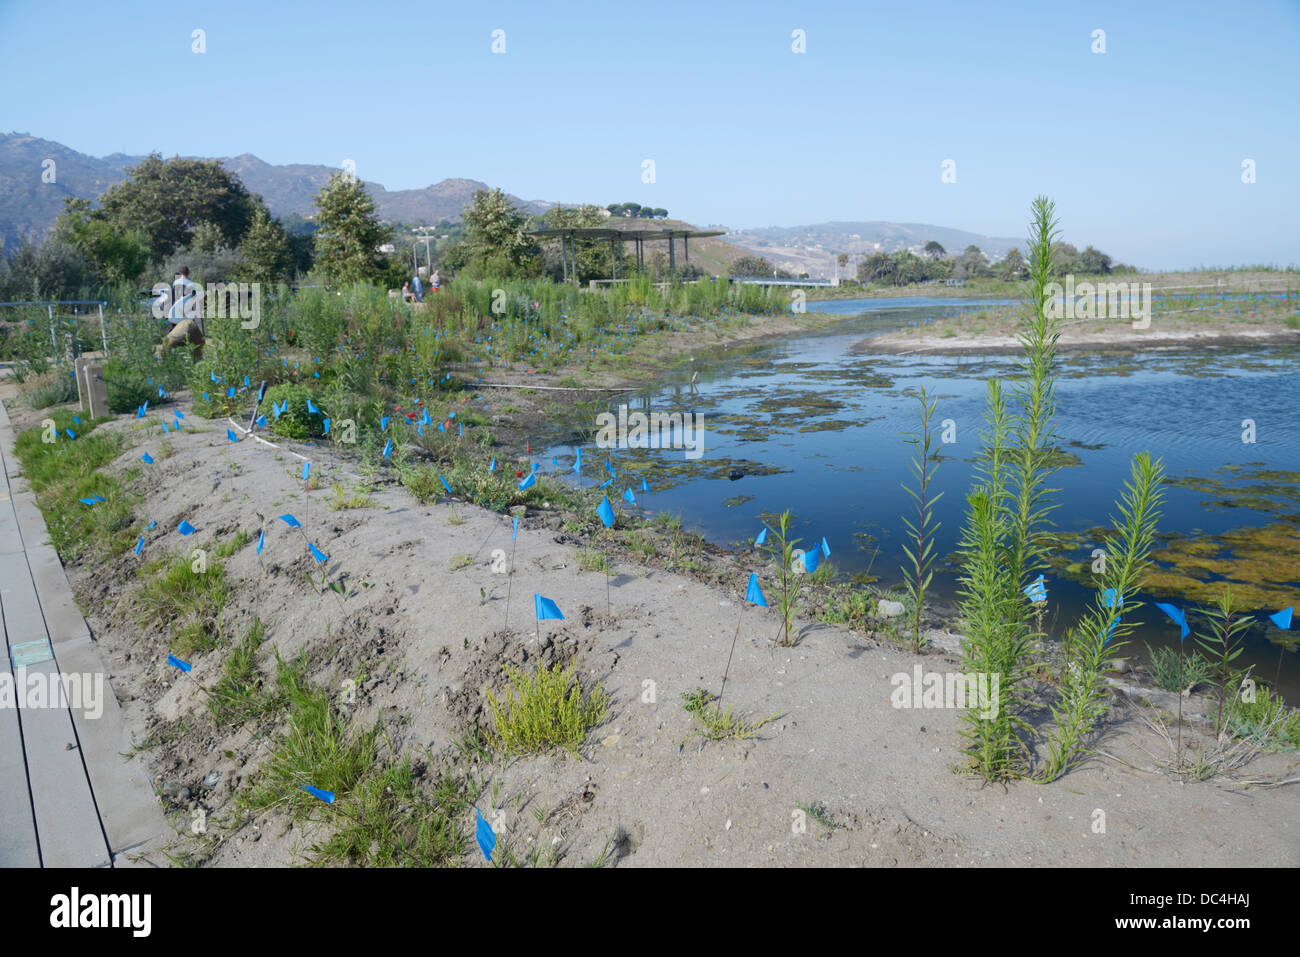 Proyecto de restauración de la Laguna de Malibu. Un grupo interinstitucional está trabajando para mejorar la salud ecológica del estuario (ver descripción) Foto de stock